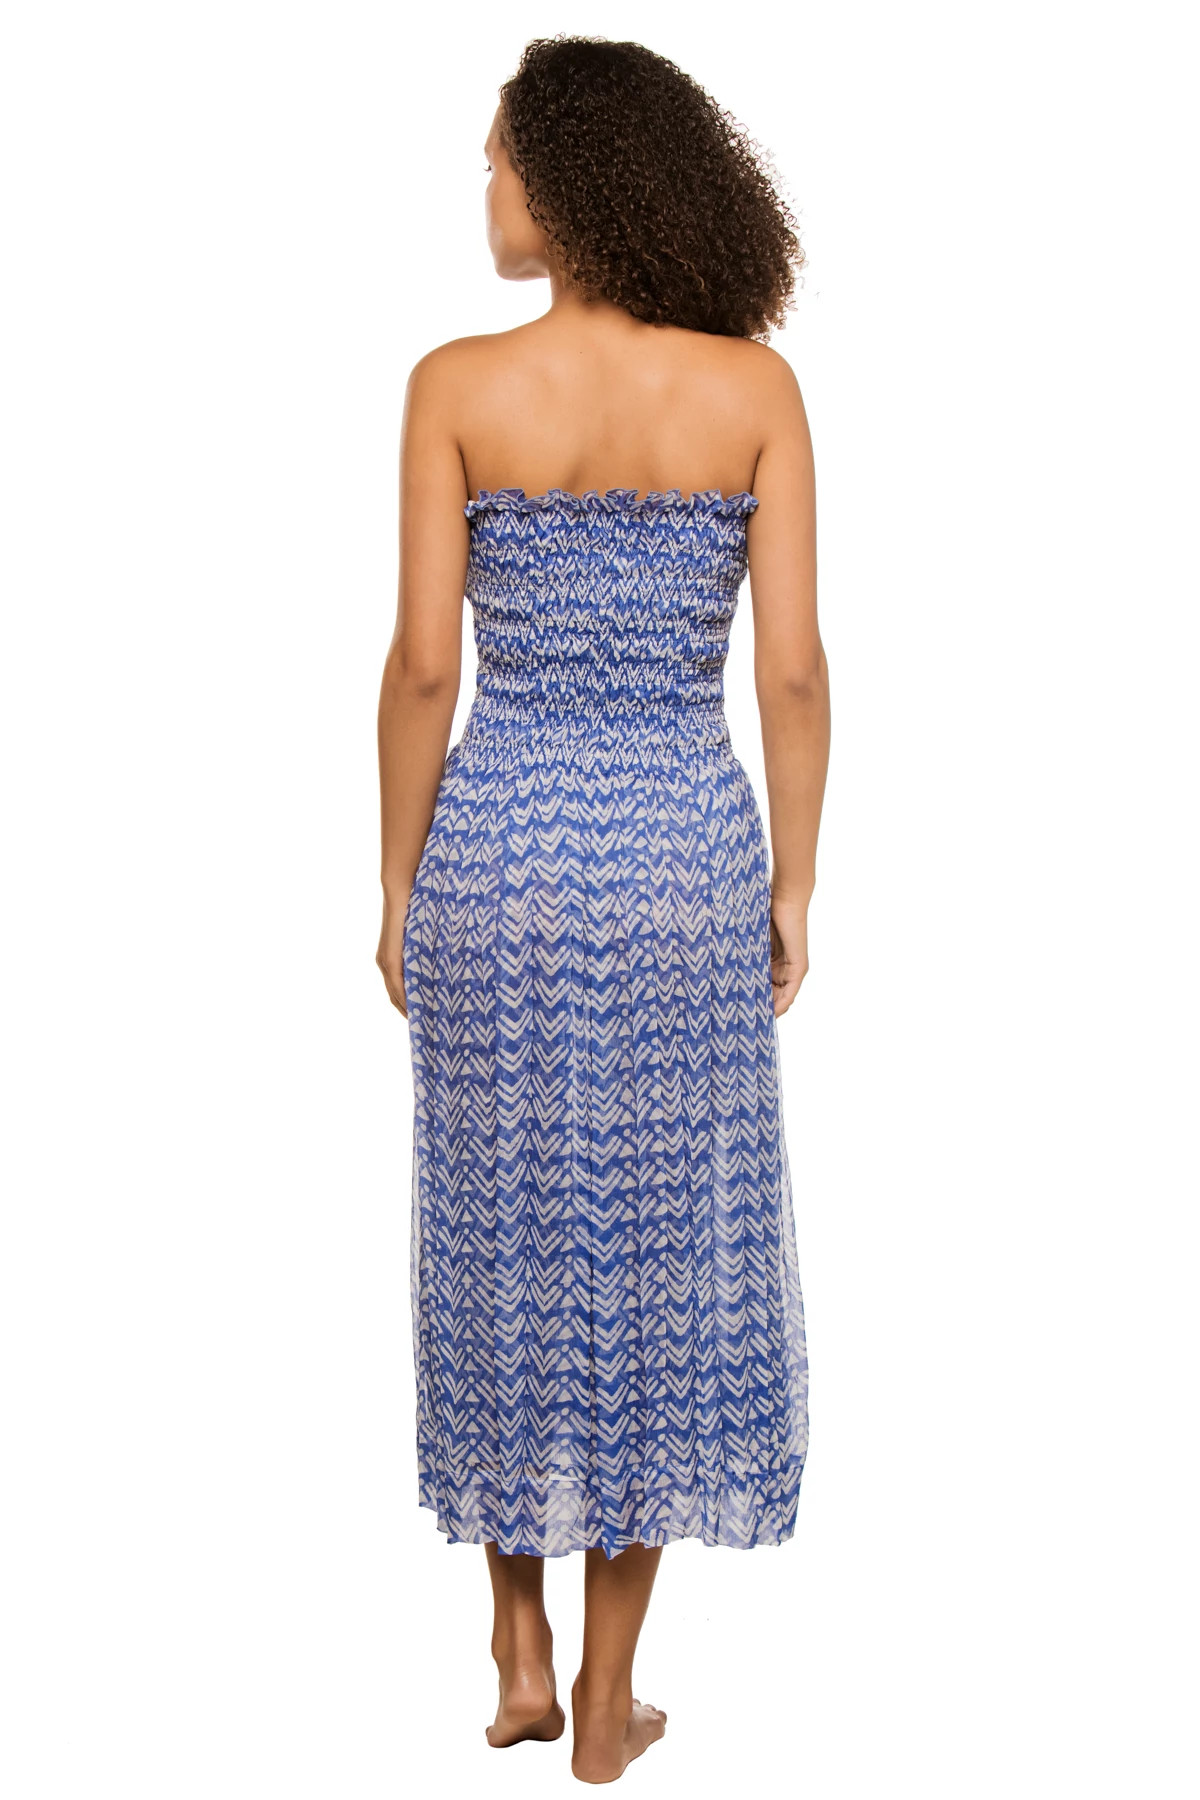 DENIM BLUE/ARROW Billie Convertible Dress/Skirt image number 2